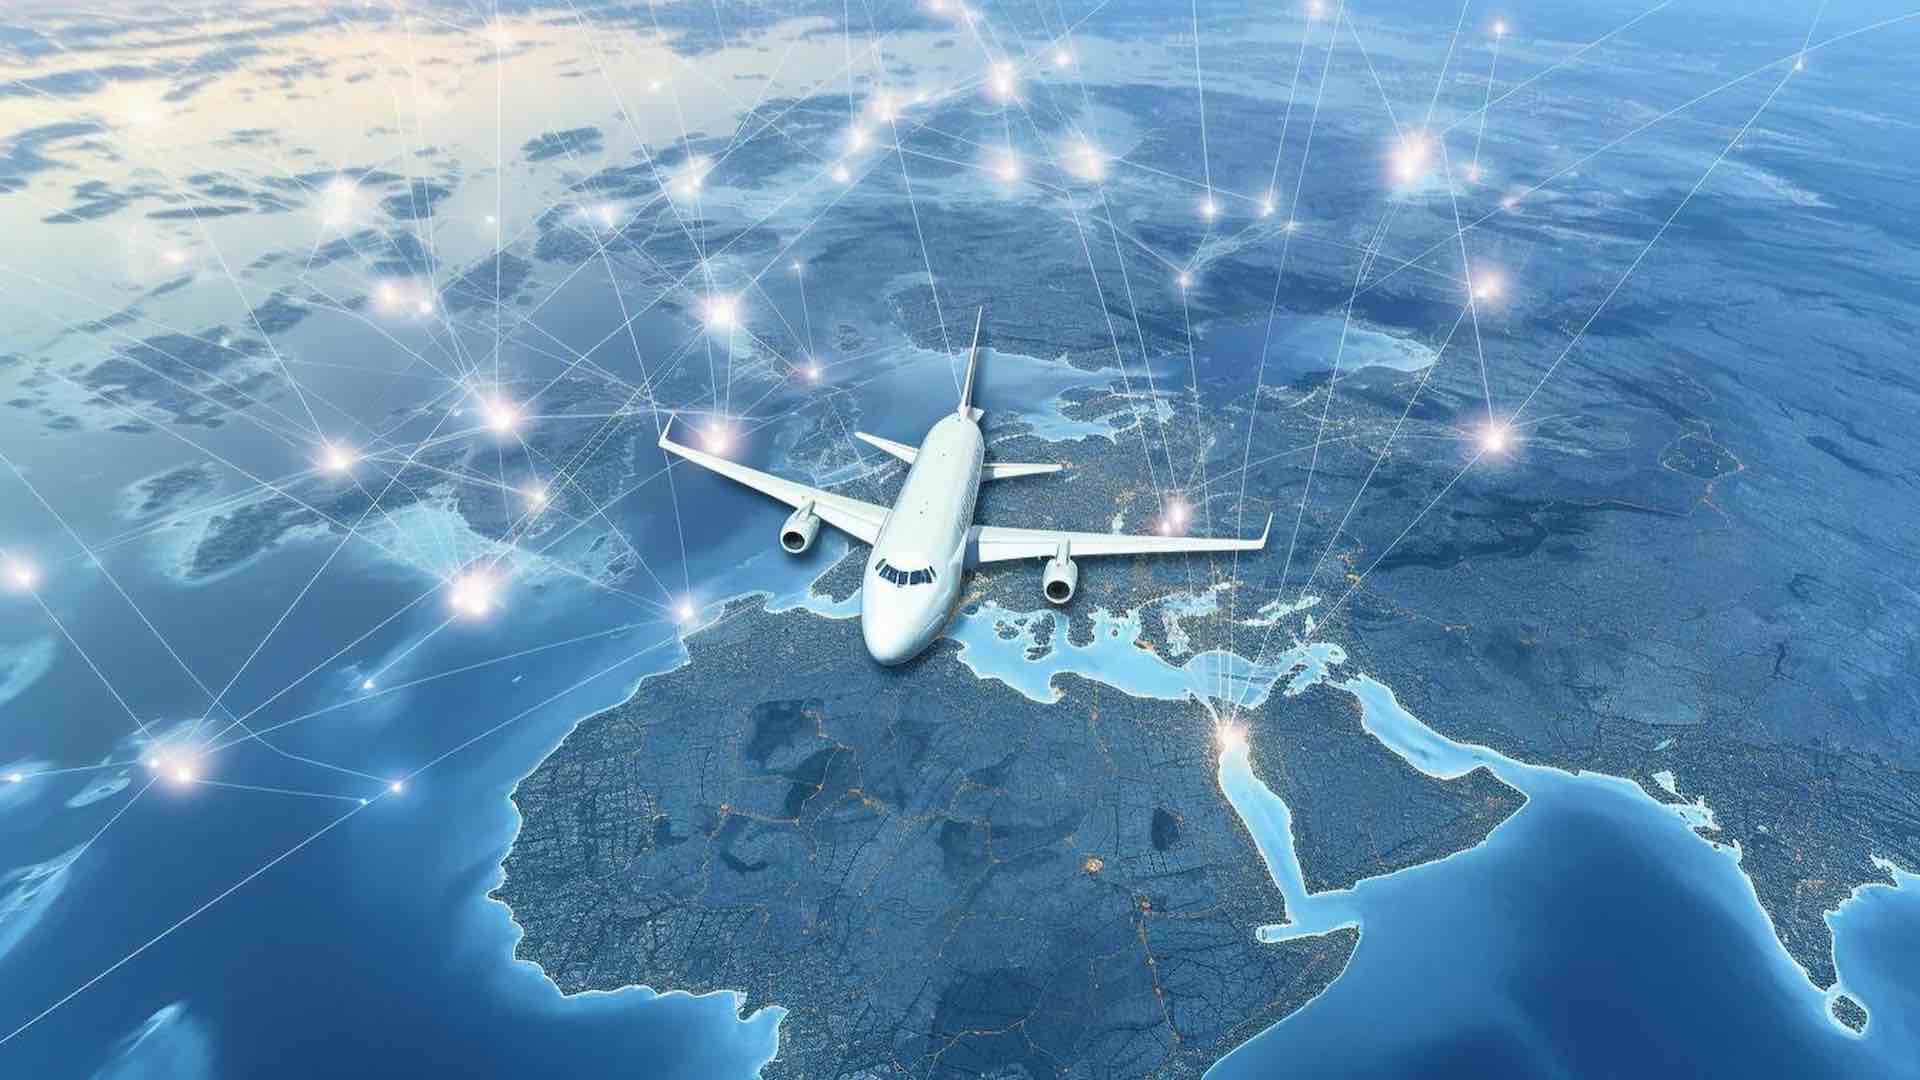 ICAO বিমান ভ্রমণে 2% বৃদ্ধির পূর্বাভাস দিয়েছে, মুনাফা $39B-তে ধরেছে